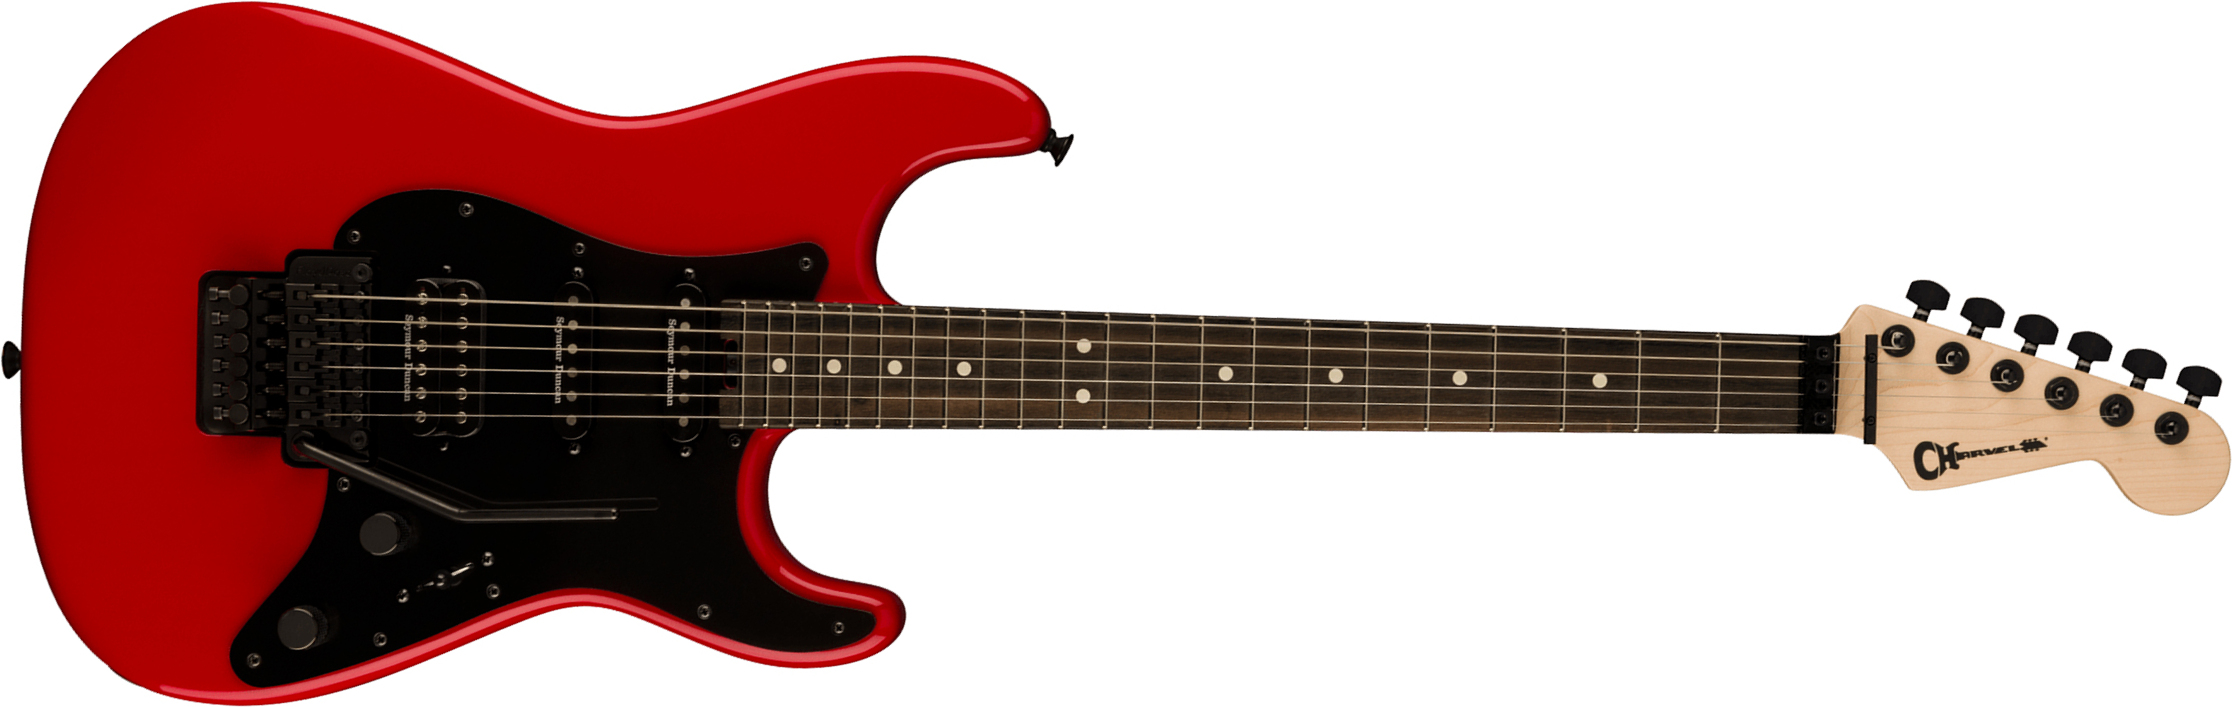 Charvel So-cal Style 1 Hss Fr E Pro-mod Seymour Duncan Eb - Ferrari Red - Guitare Électrique Forme Str - Main picture